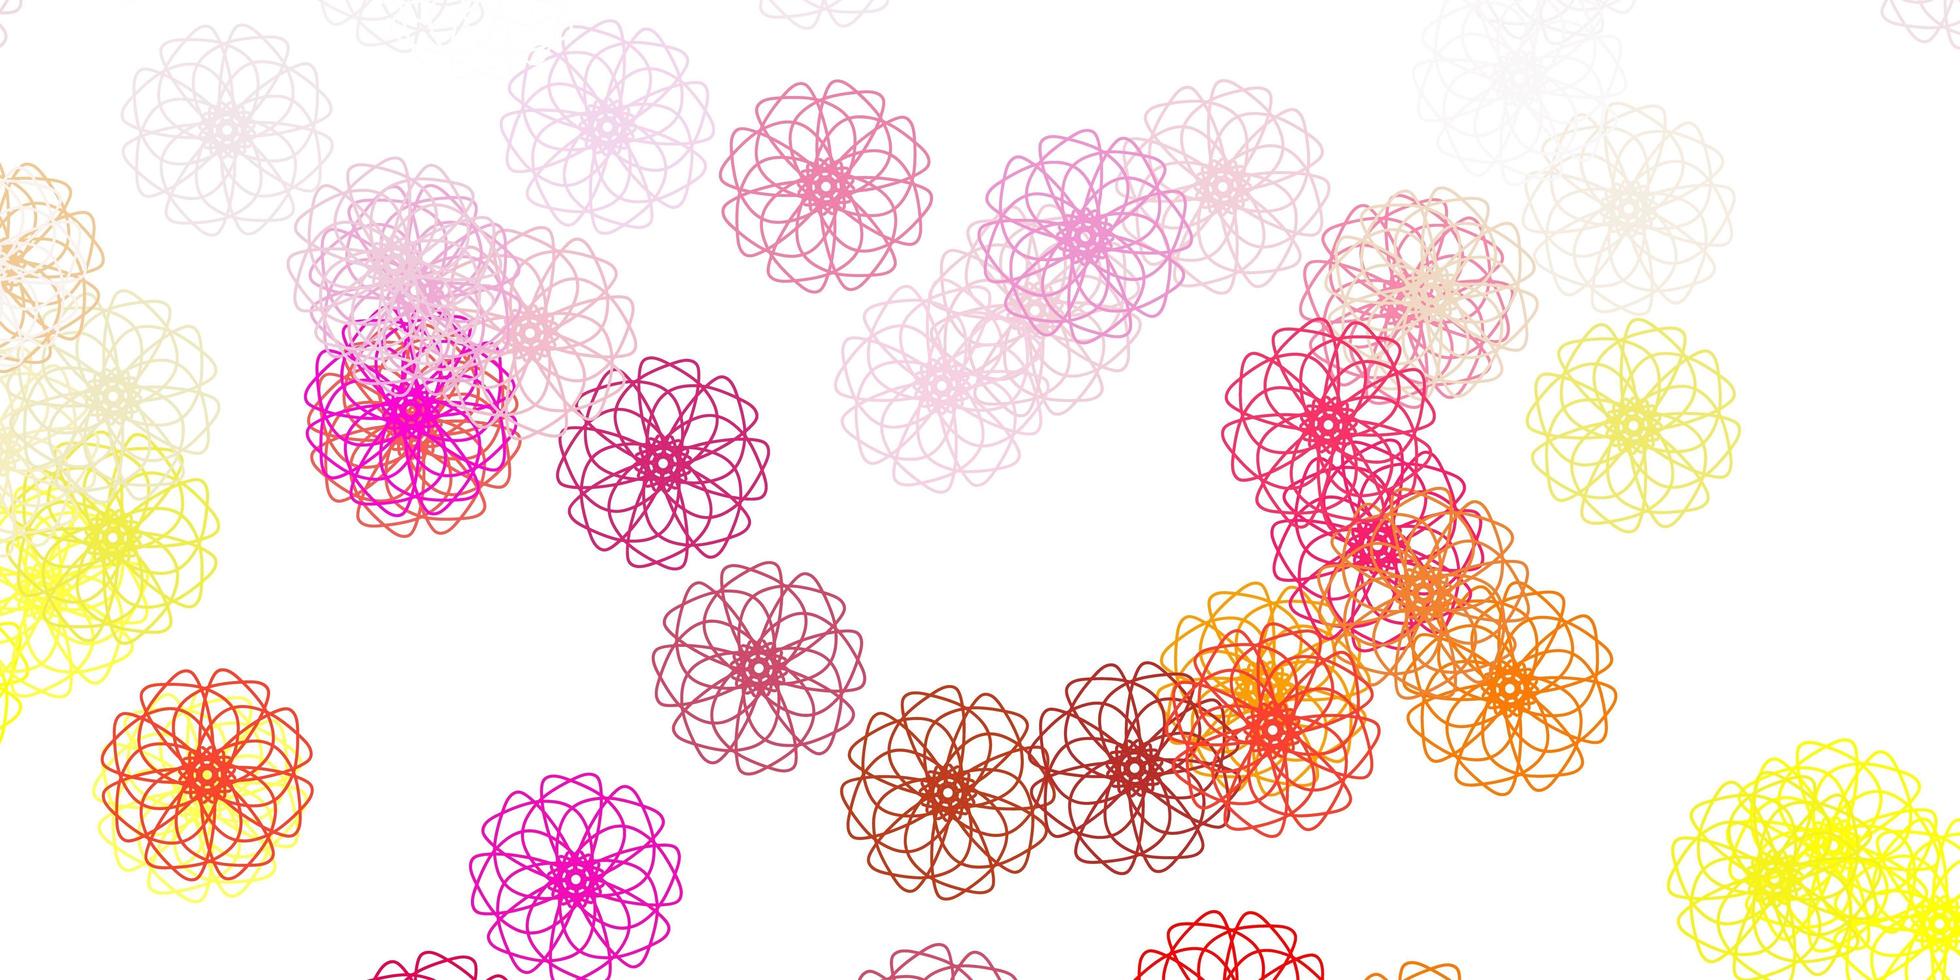 struttura di doodle di vettore rosa chiaro, giallo con fiori.